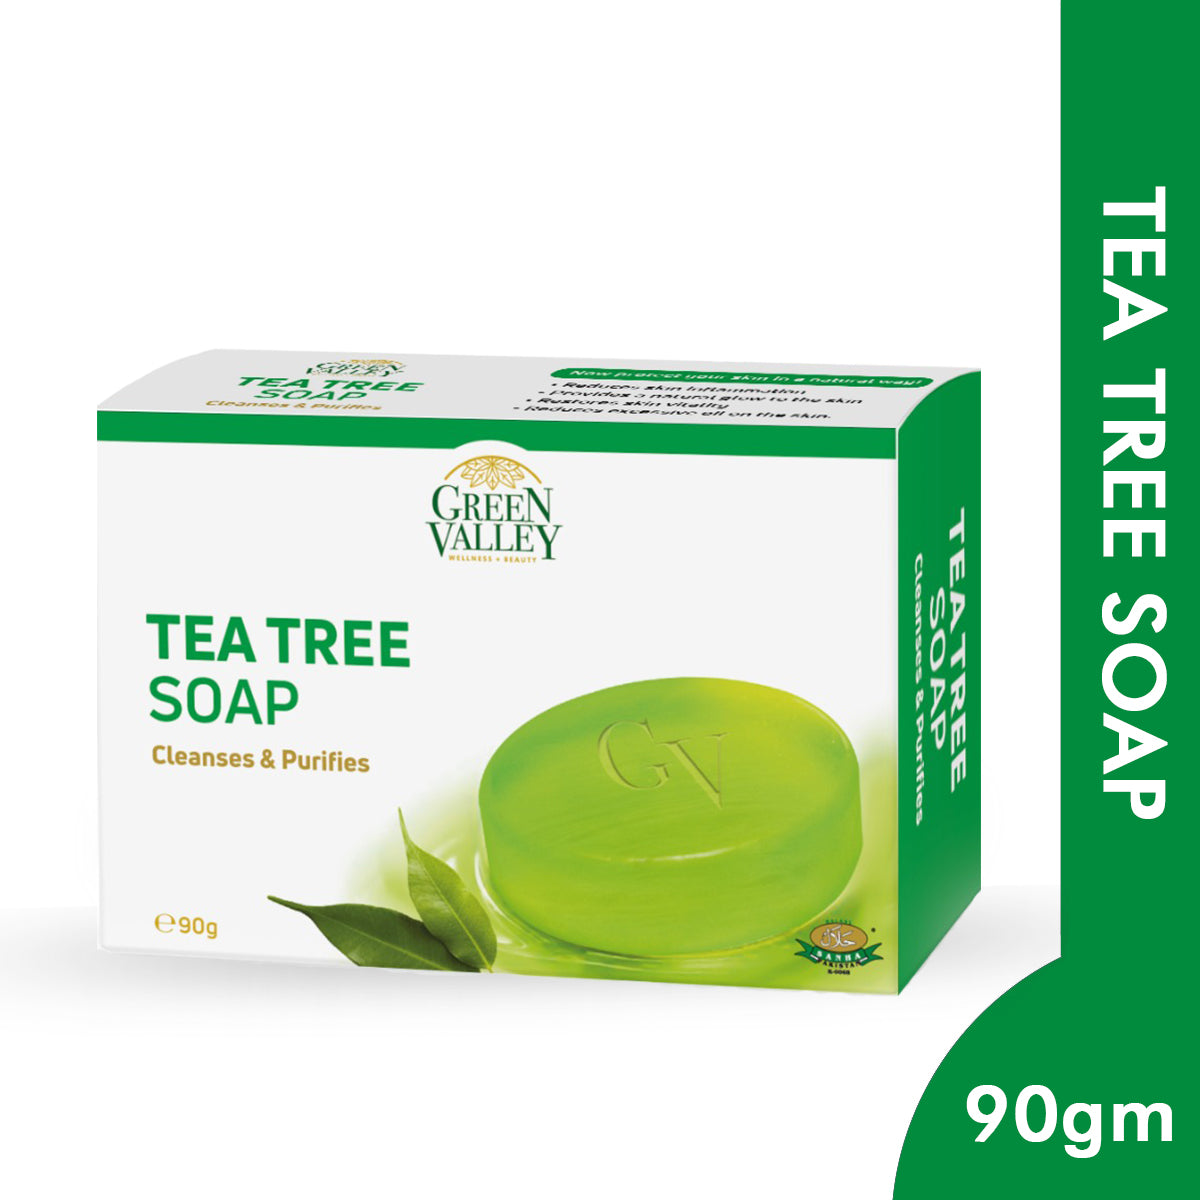 Tea tree soap (Anti bacterial) 90g